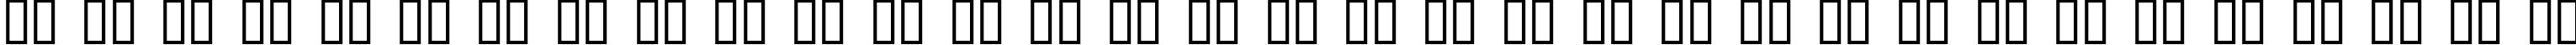 Пример написания русского алфавита шрифтом InstantTunes